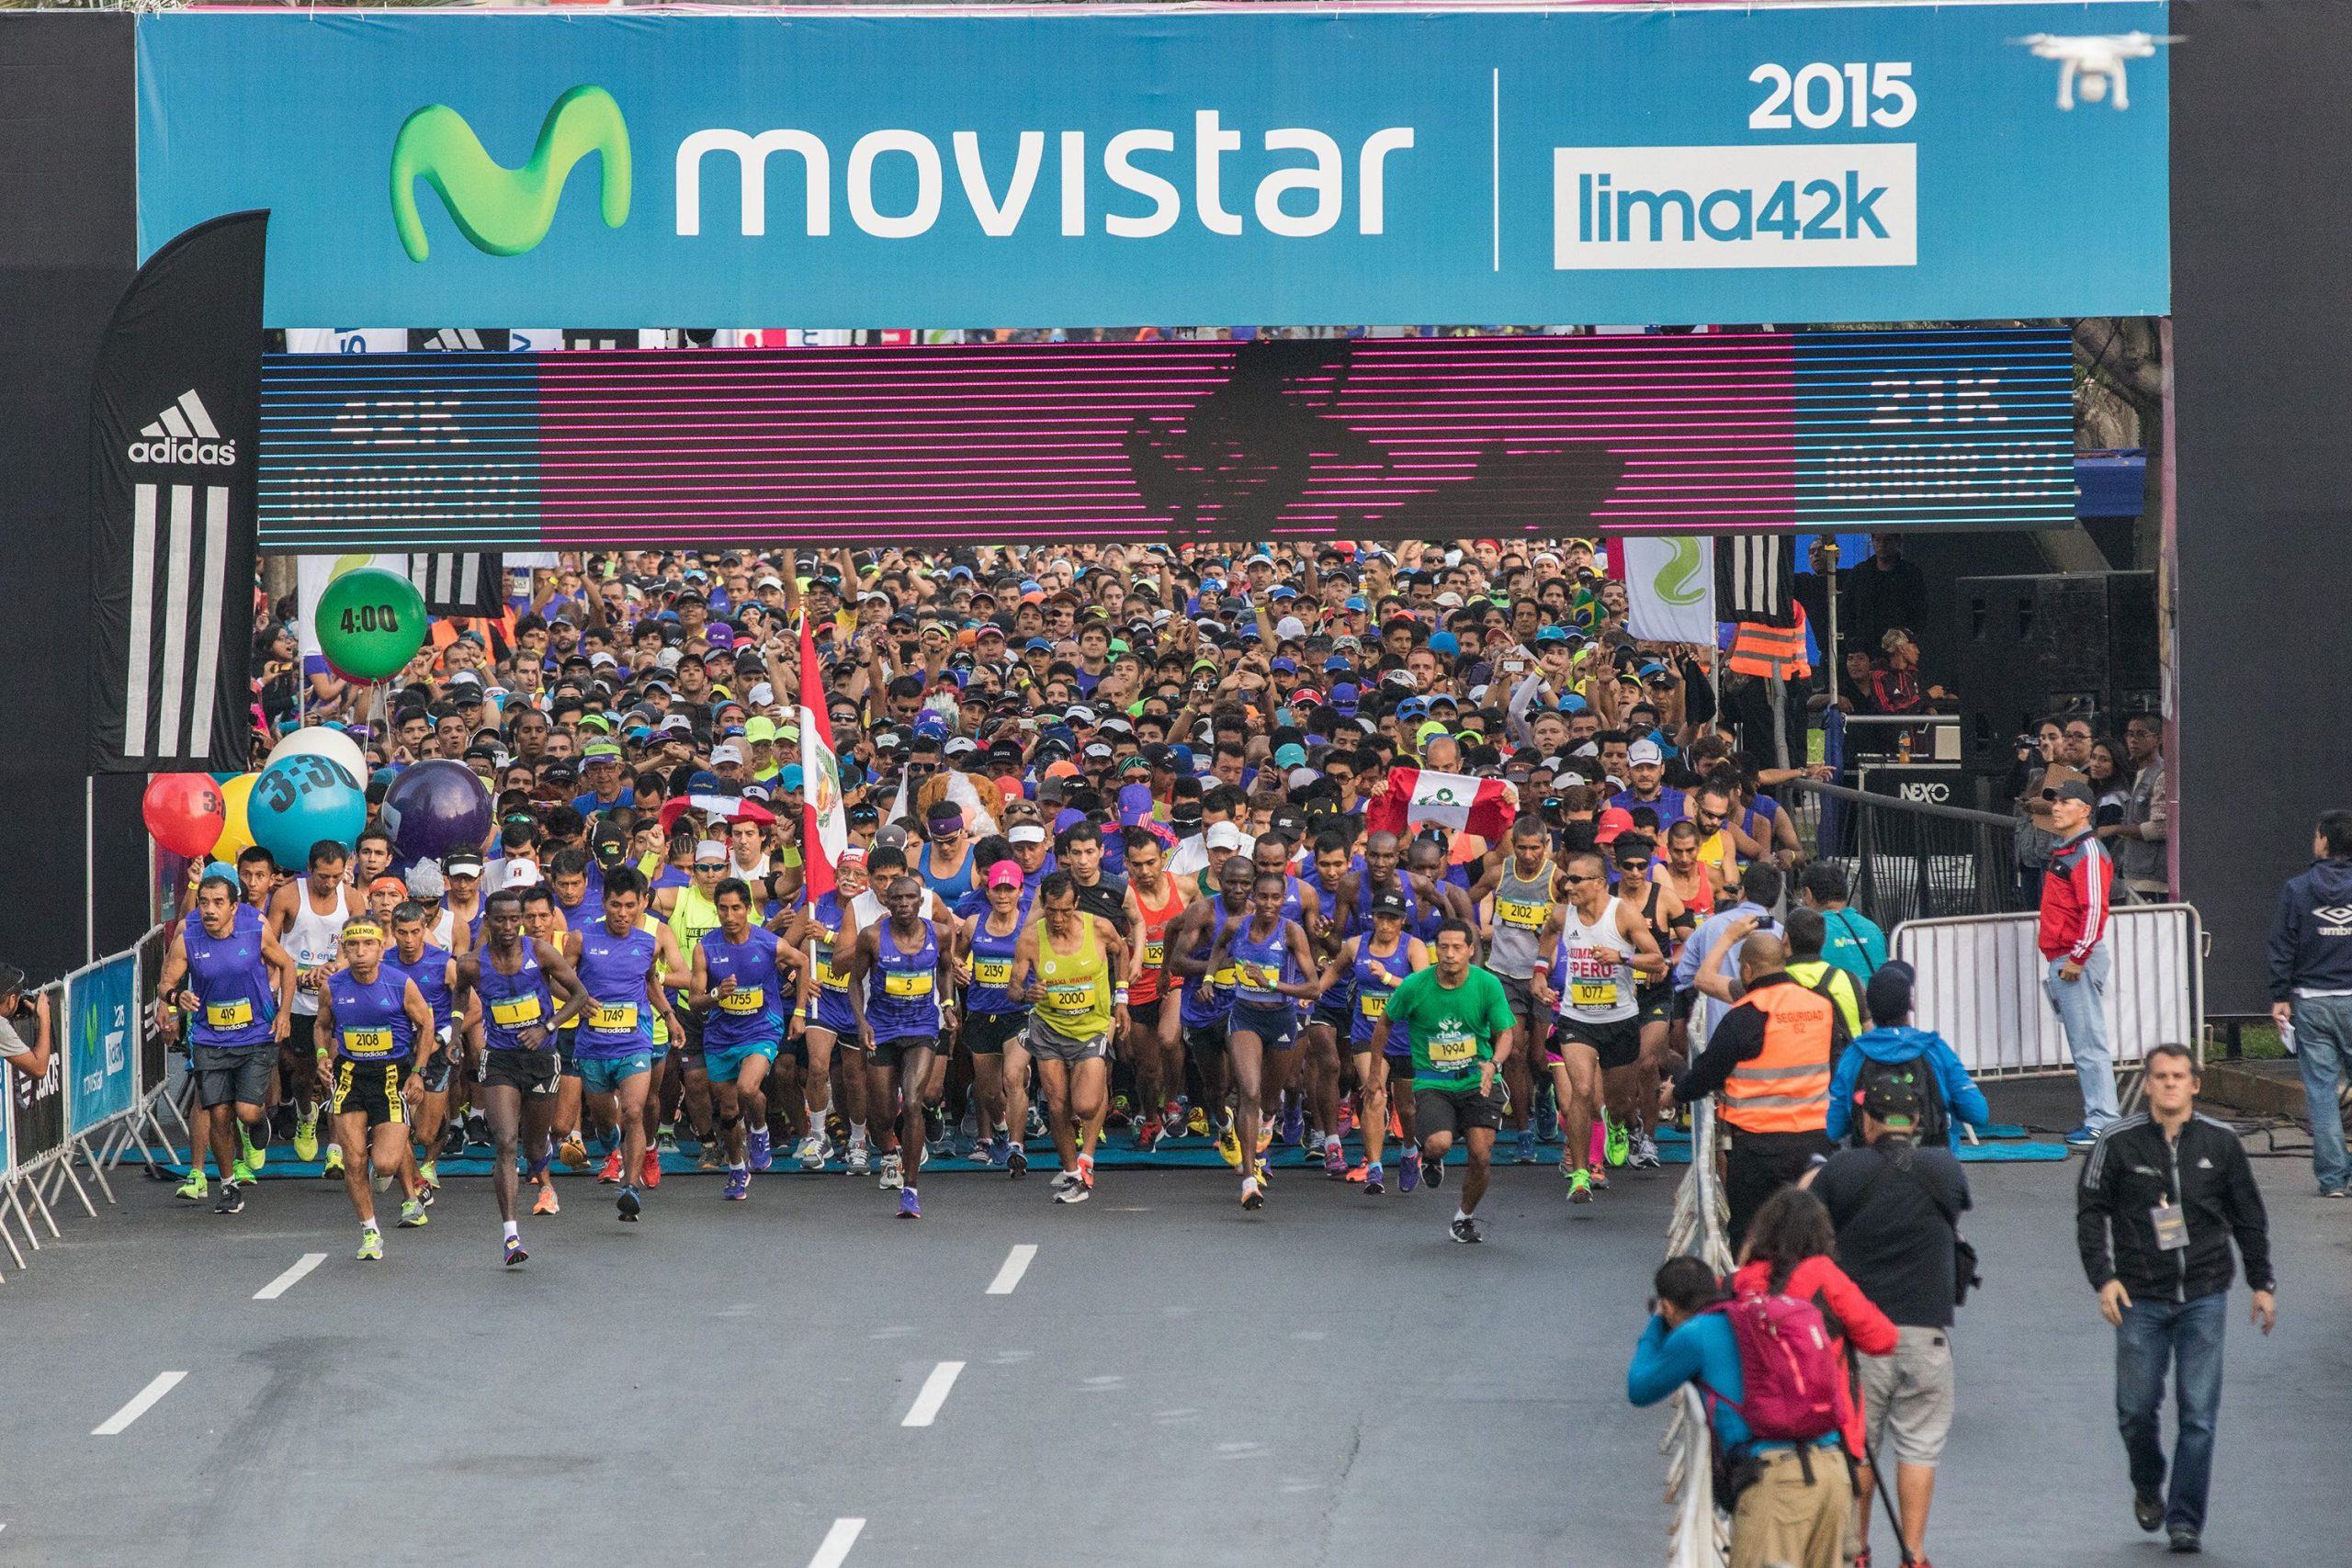 La energía de apoderó de 12,500 corredores en Lima 42k